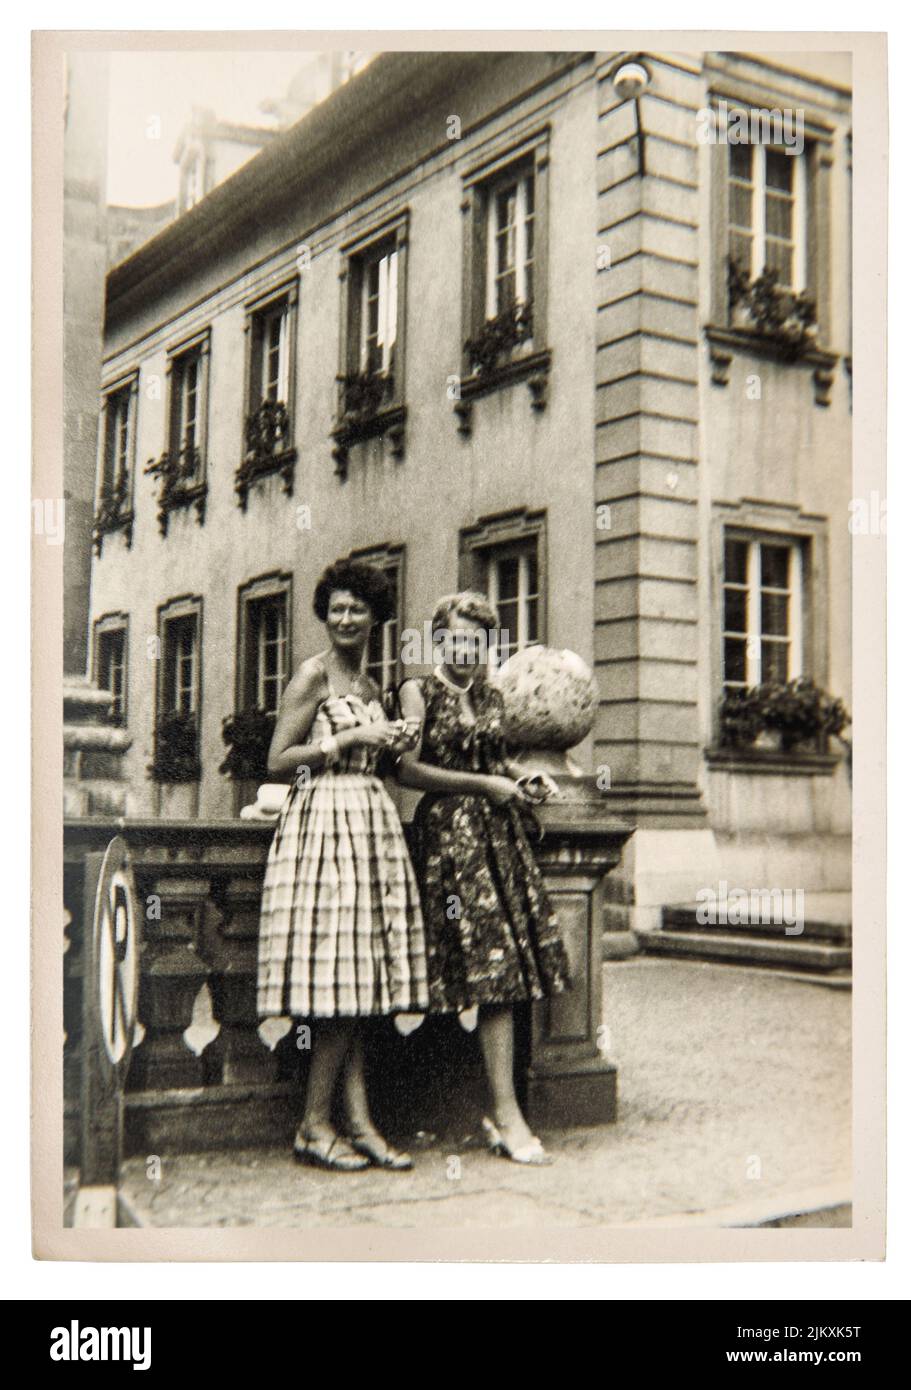 Photo ancienne des femmes de mode dans la ville en plein air. Image vintage avec grain original et flou de env. 1960 Banque D'Images